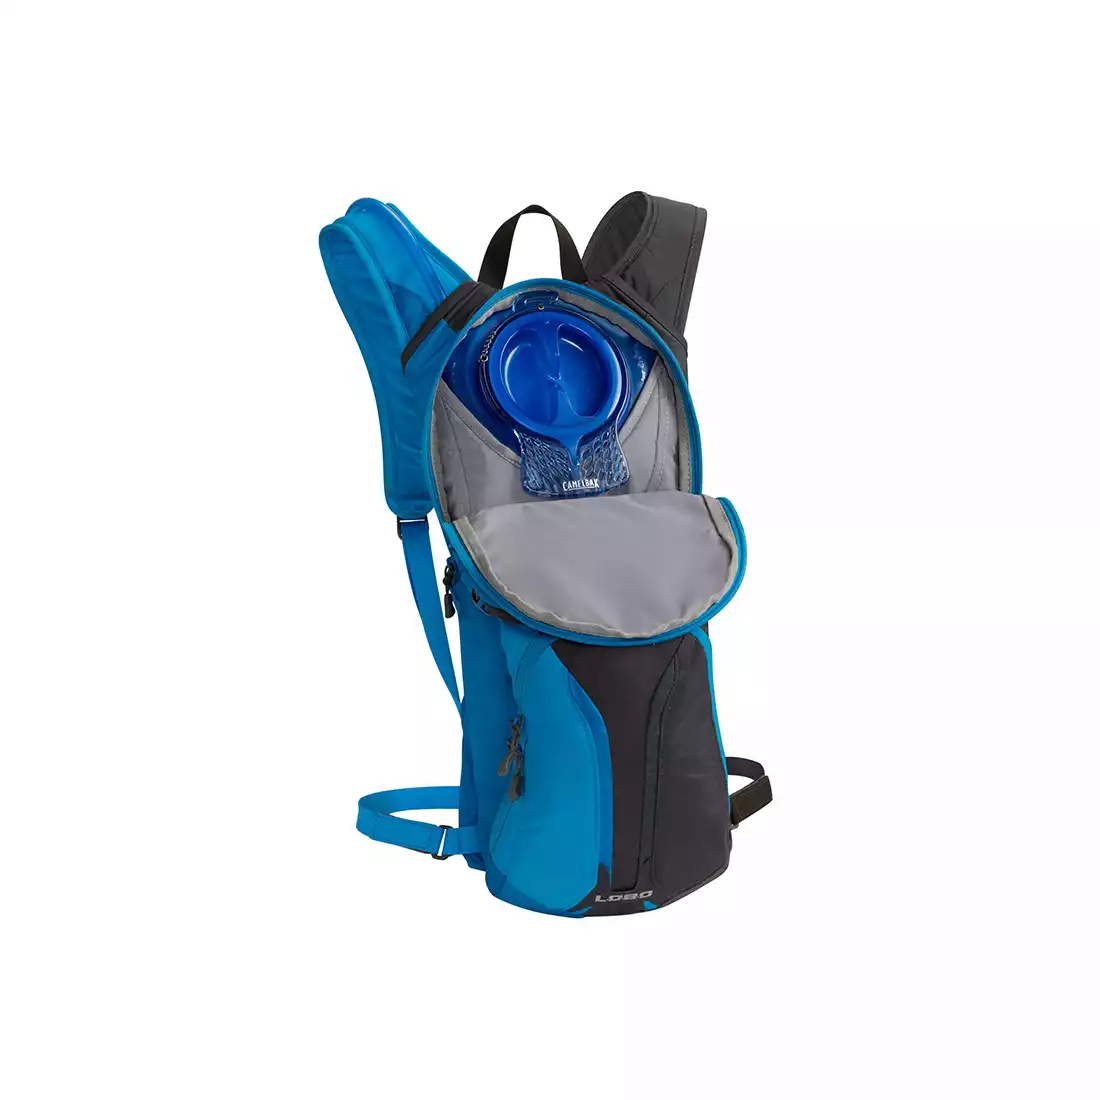 CAMELBAK plecak z bukłakiem Lobo 100 oz / 3L Charcoal/Ember INTL 62552-IN SS16